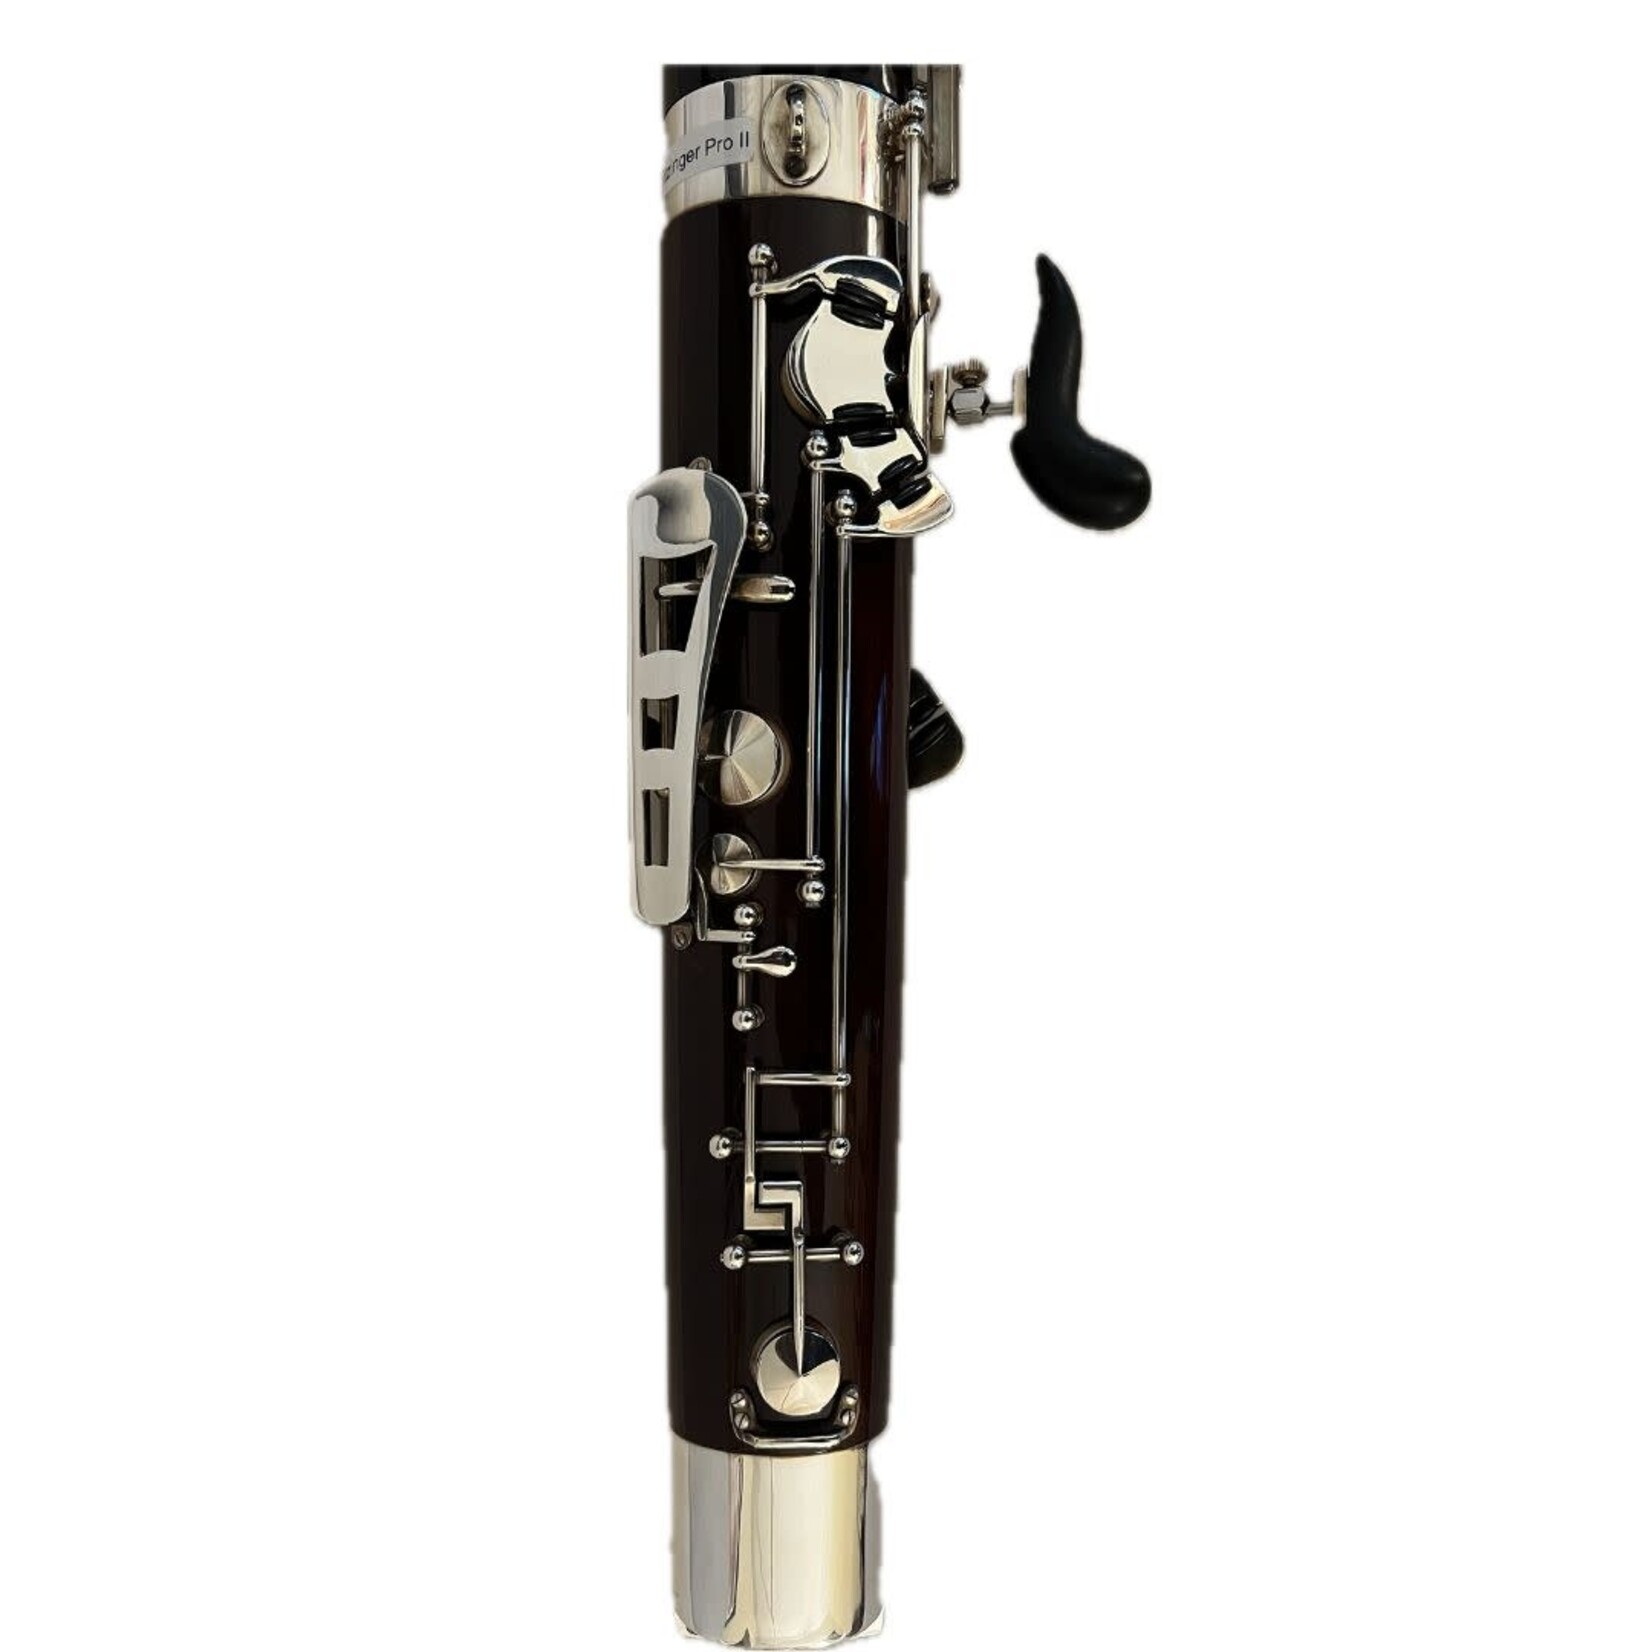 Leitzinger Used Leitzinger Professional II Bassoon